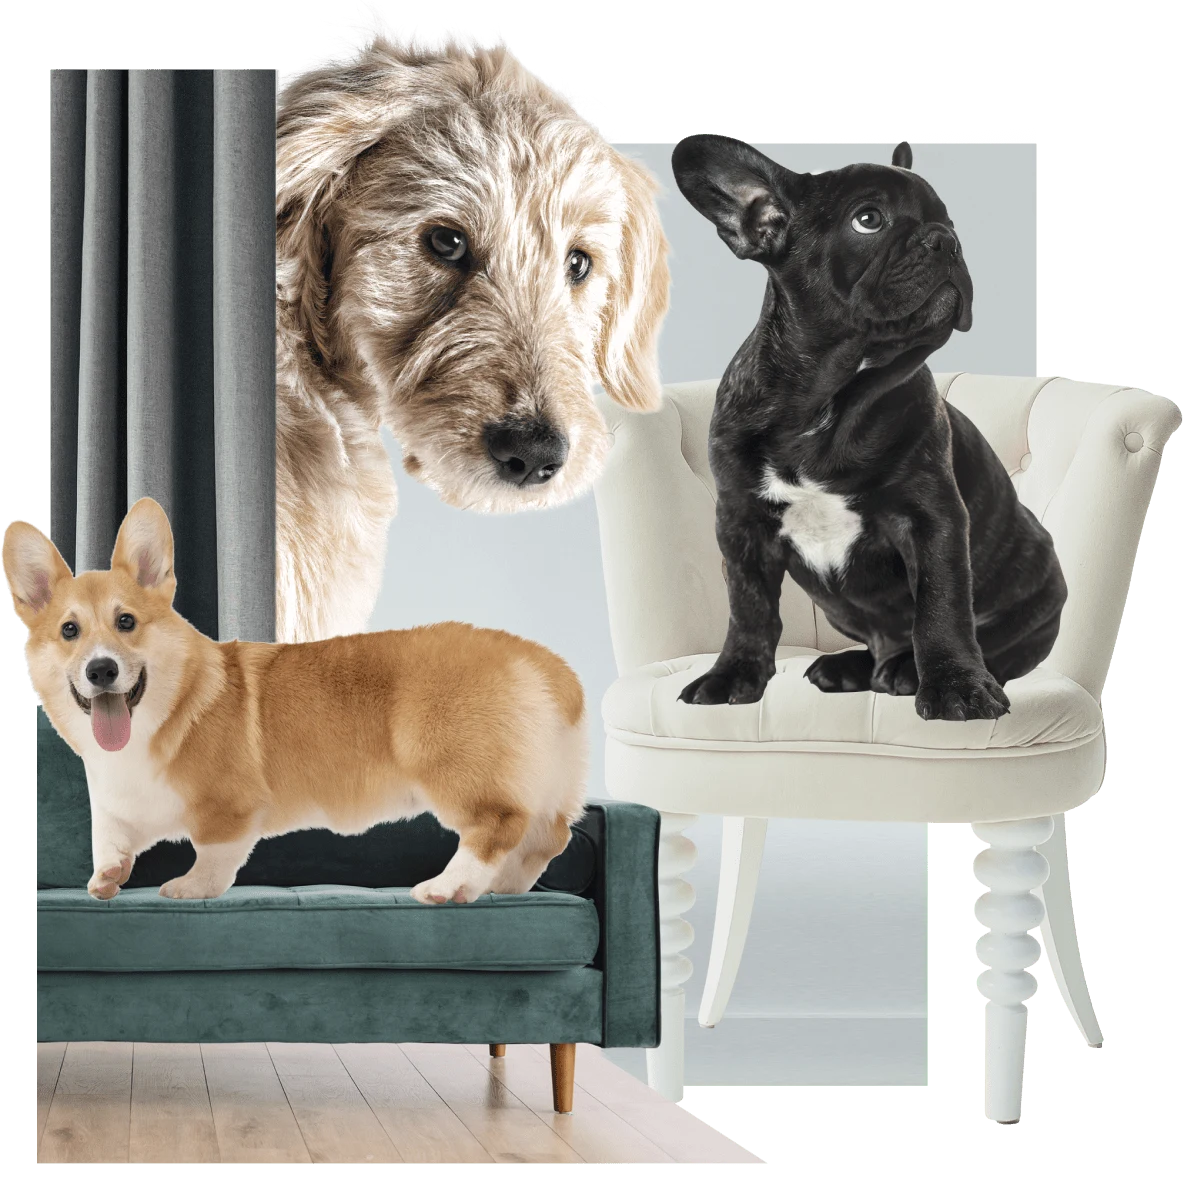 A sinistra, un corgi su un divano verde. A destra, un bulldog francese su una sedia bianca. Sullo sfondo, un levriero irlandese fa capolino da dietro una tenda verde.